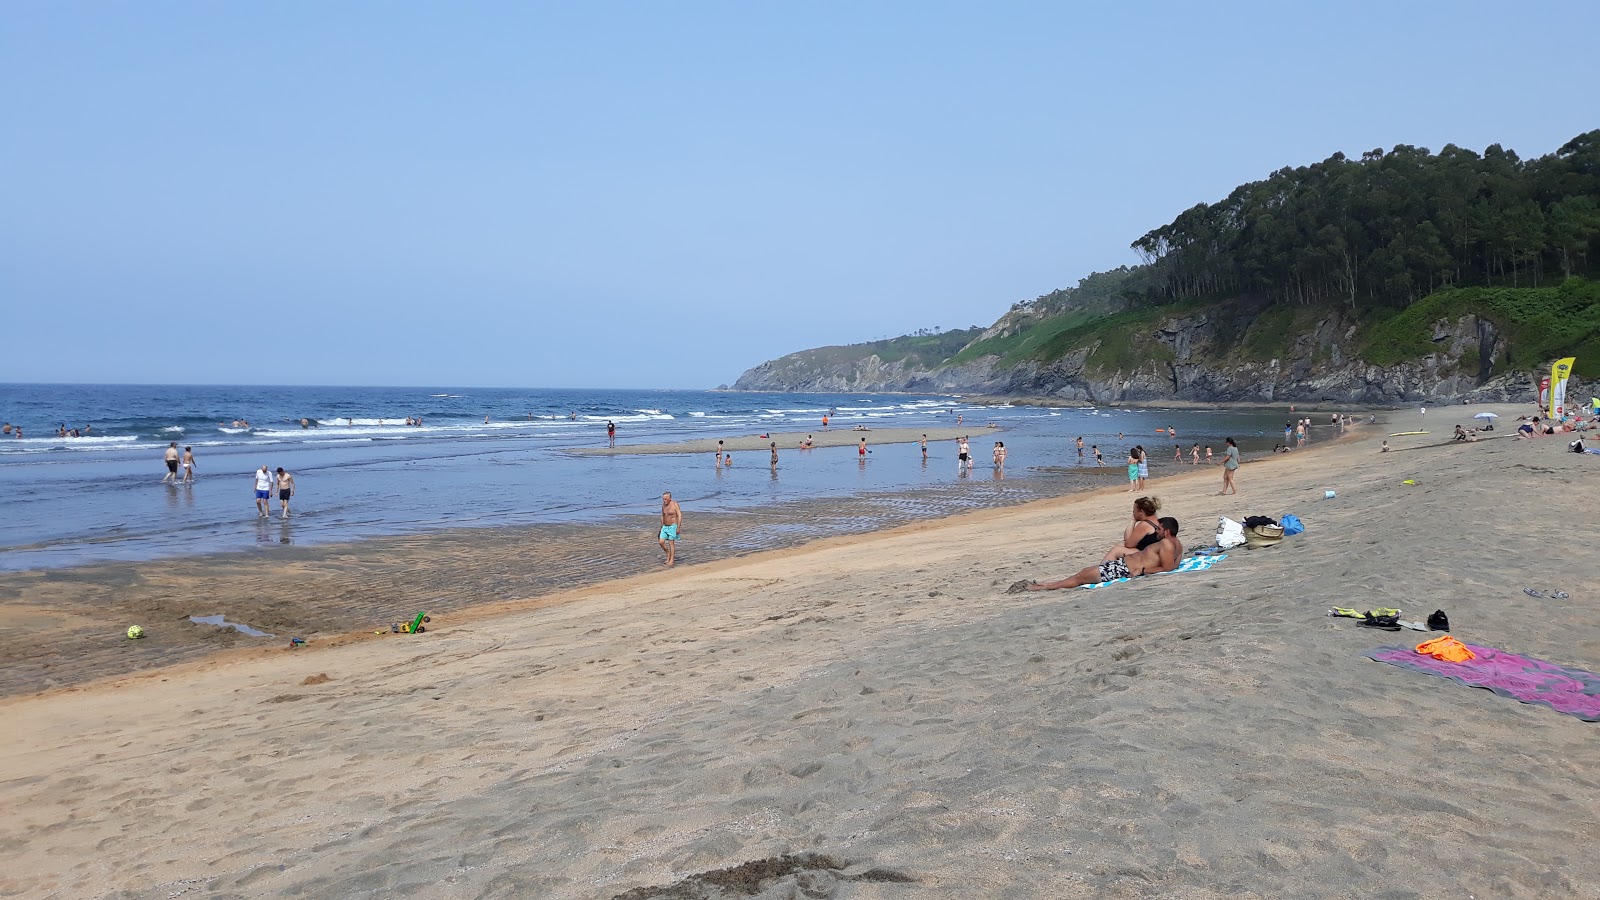 Playa de Otur'in fotoğrafı geniş ile birlikte